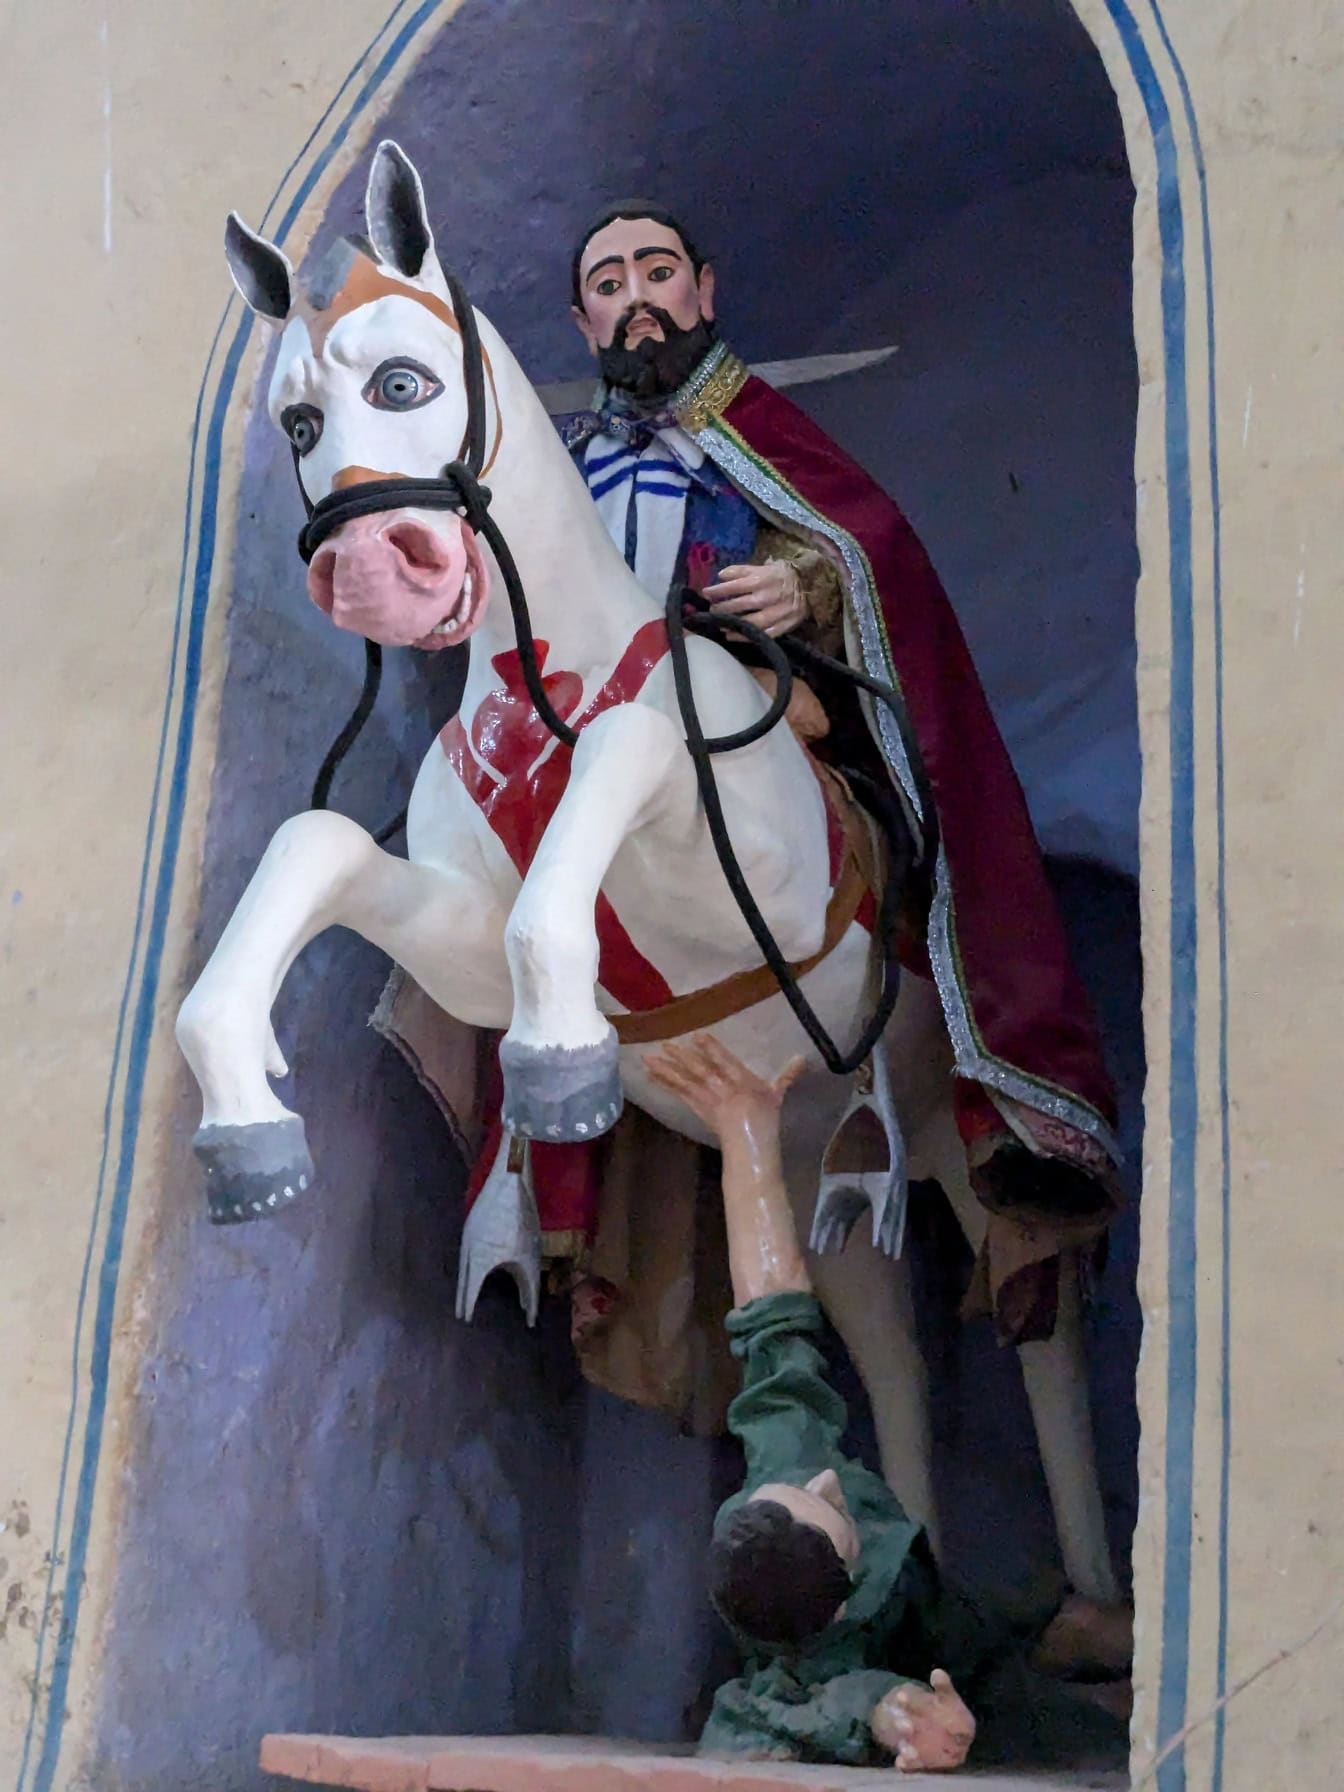 Γύψινο άγαλμα ενός έφιππου ιππέα που πηδά πάνω από έναν άλλο άνδρα κάτω από ένα άλογο